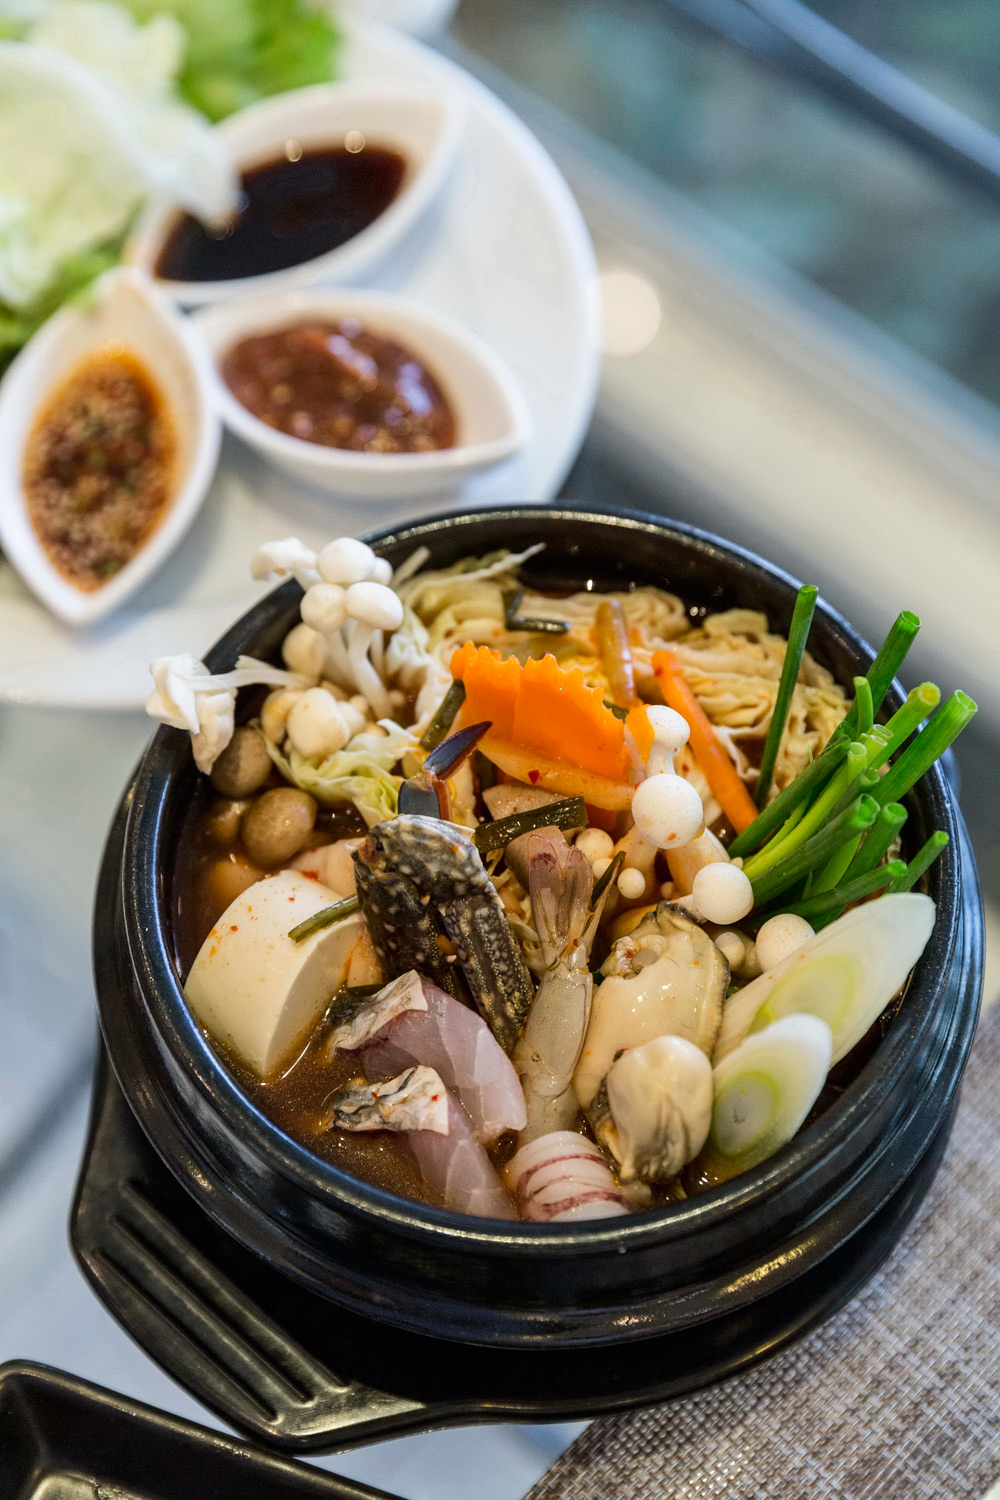 รูปภาพของ เทศกาลอาหารเกาหลี ที่แคนทารี เบย์ ศรีราชา